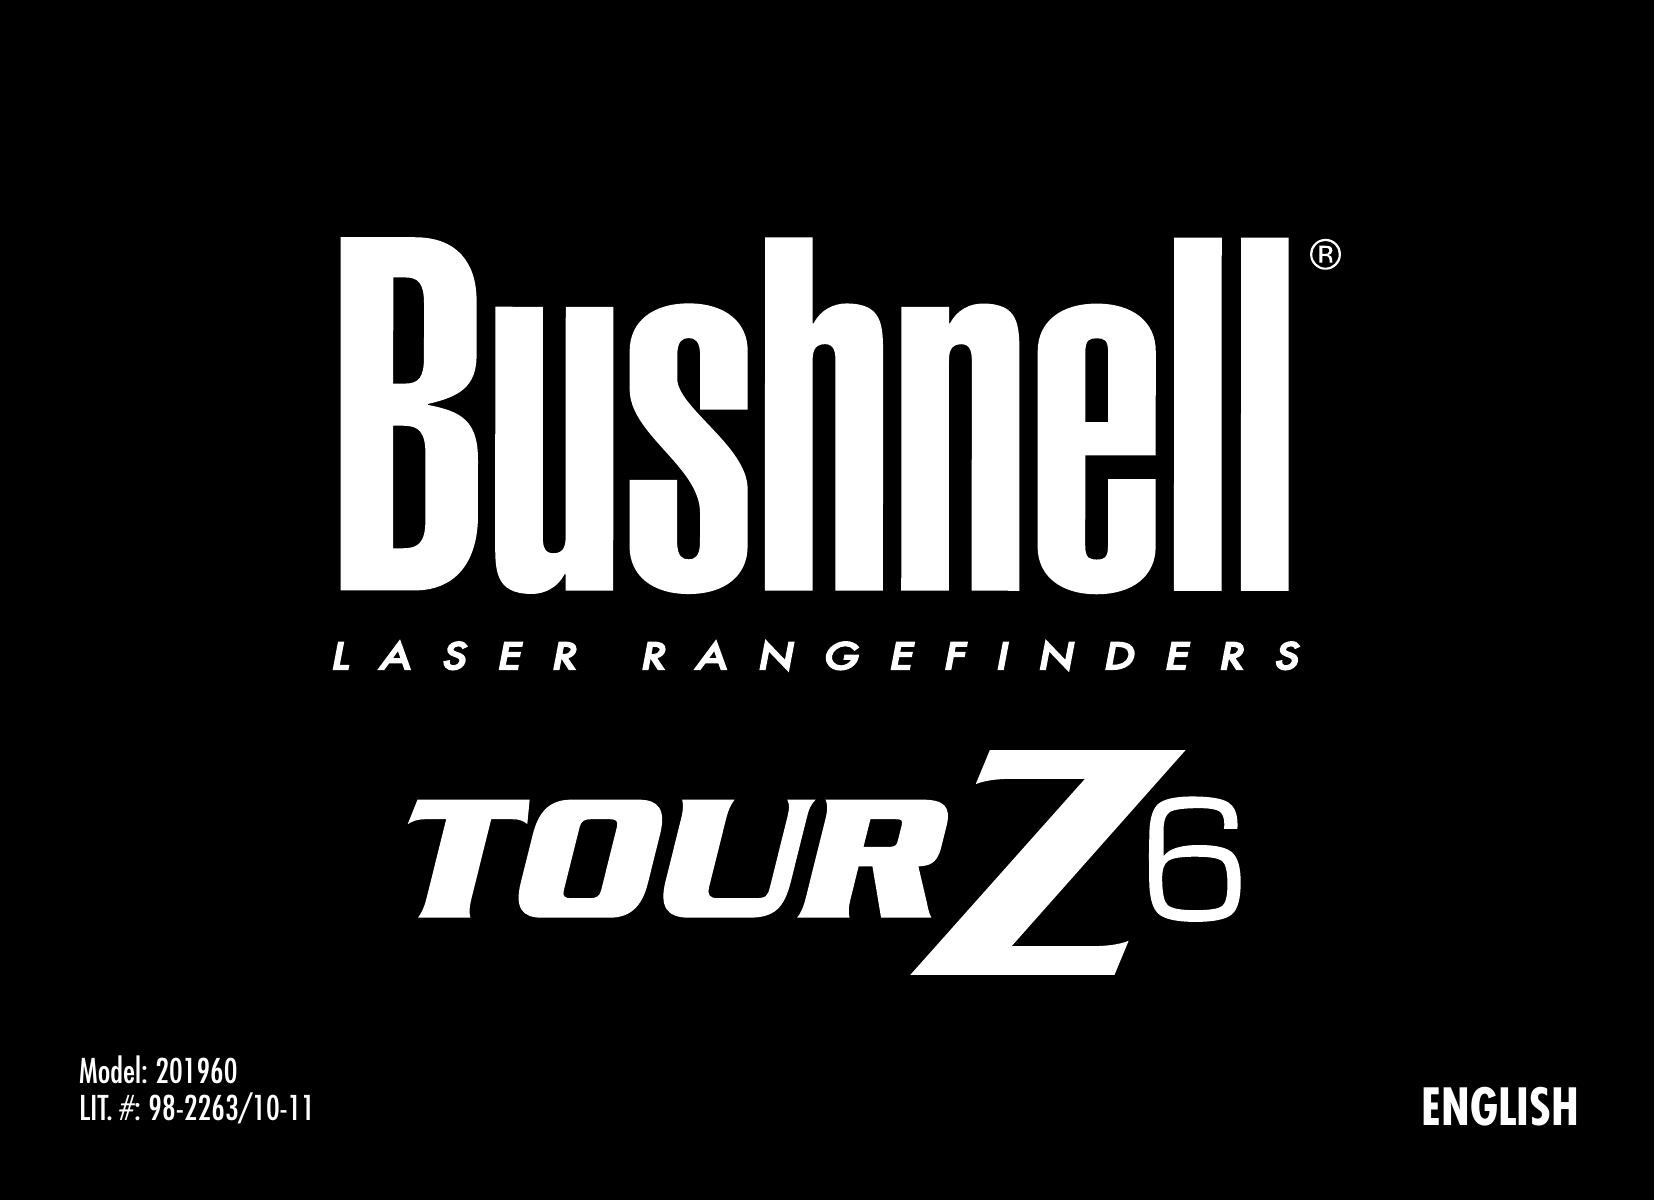 Bushnell 201960 Film Camera User Manual